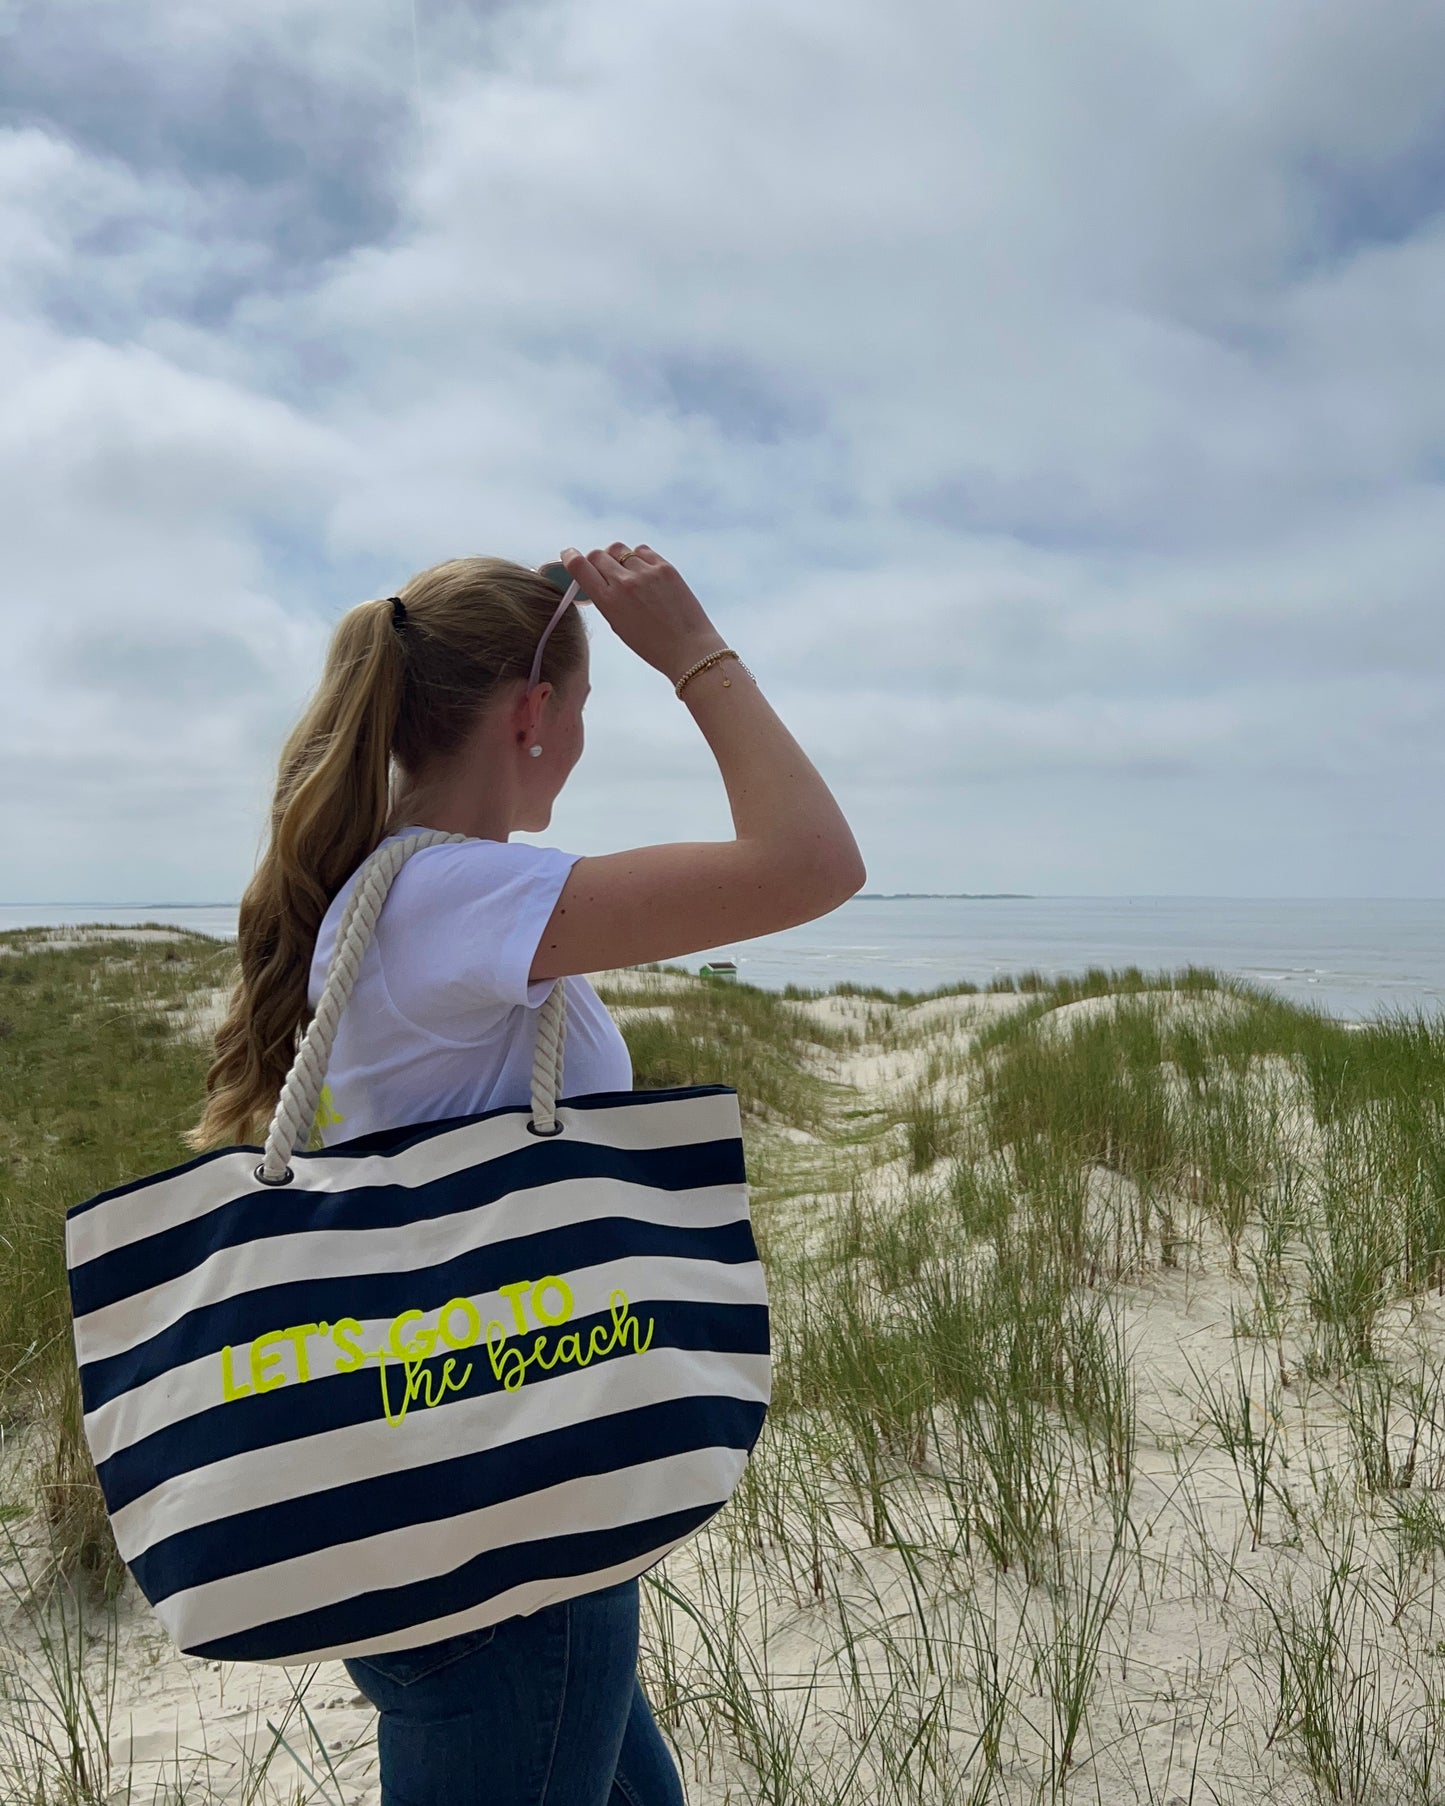 Let`s go the beach (bag)